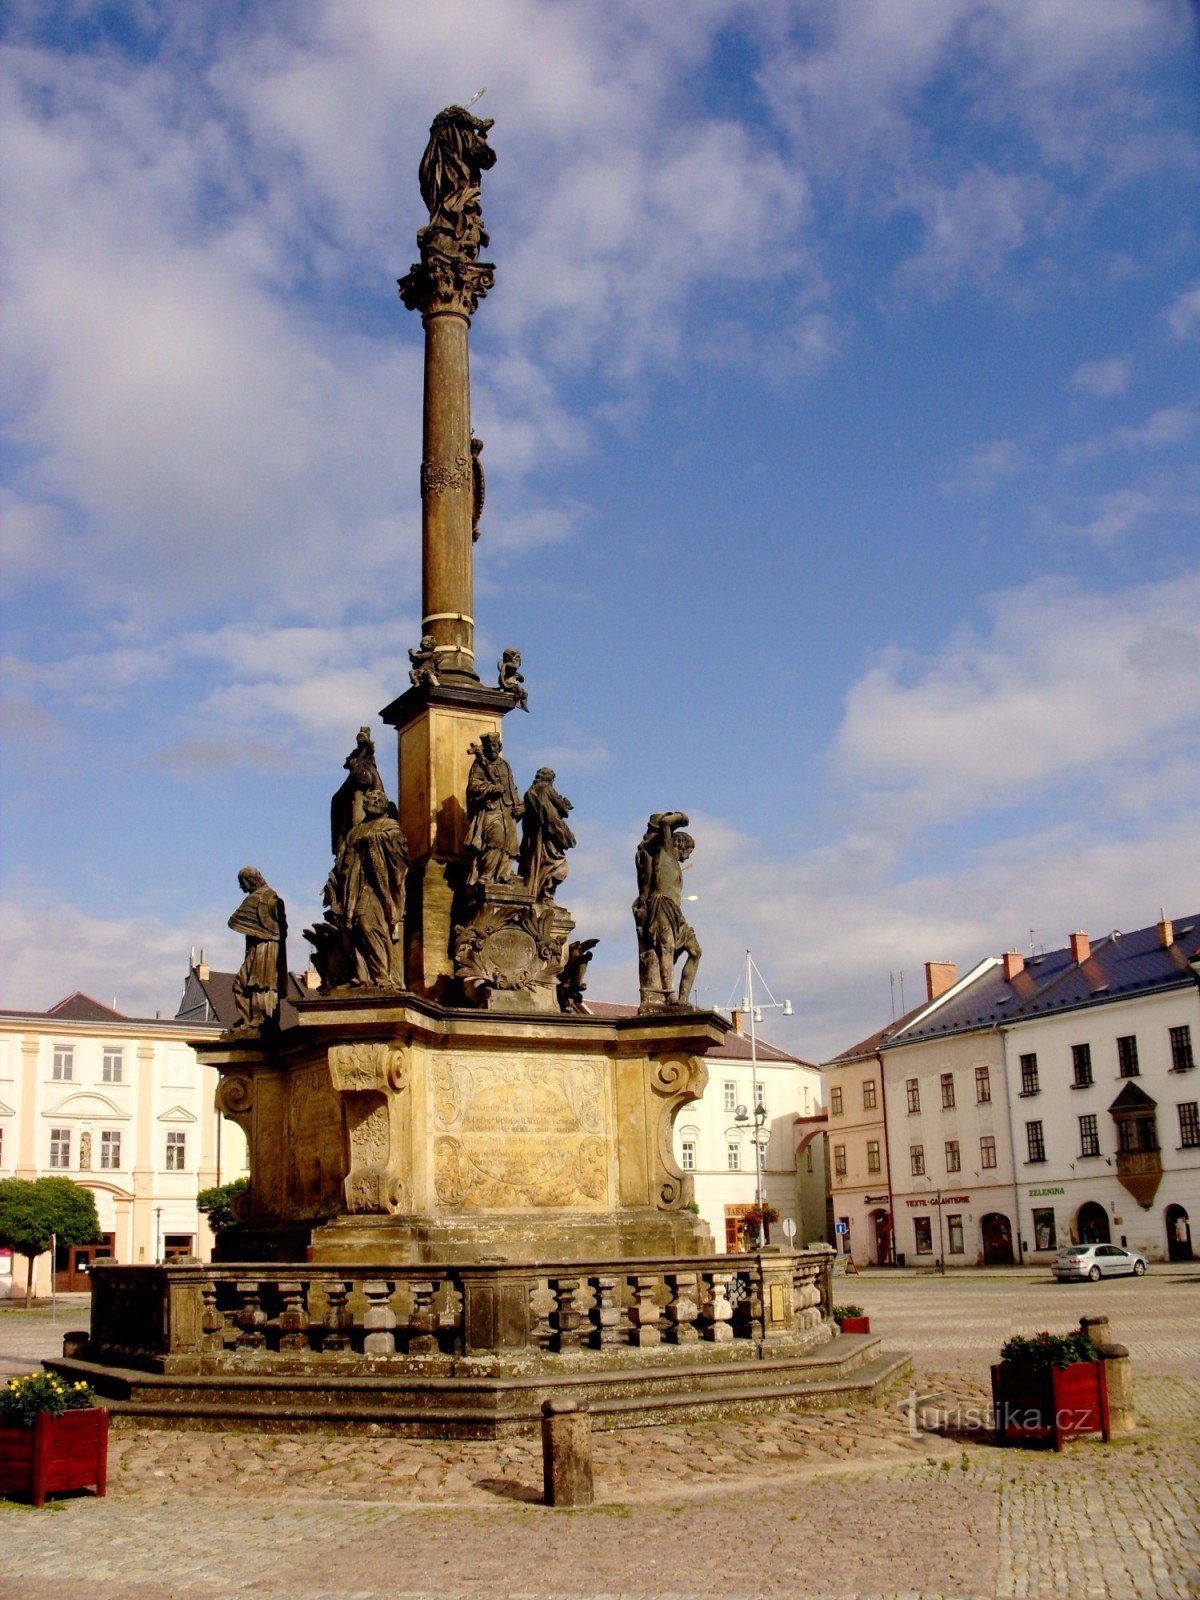 Moravská Třebová and its attractions